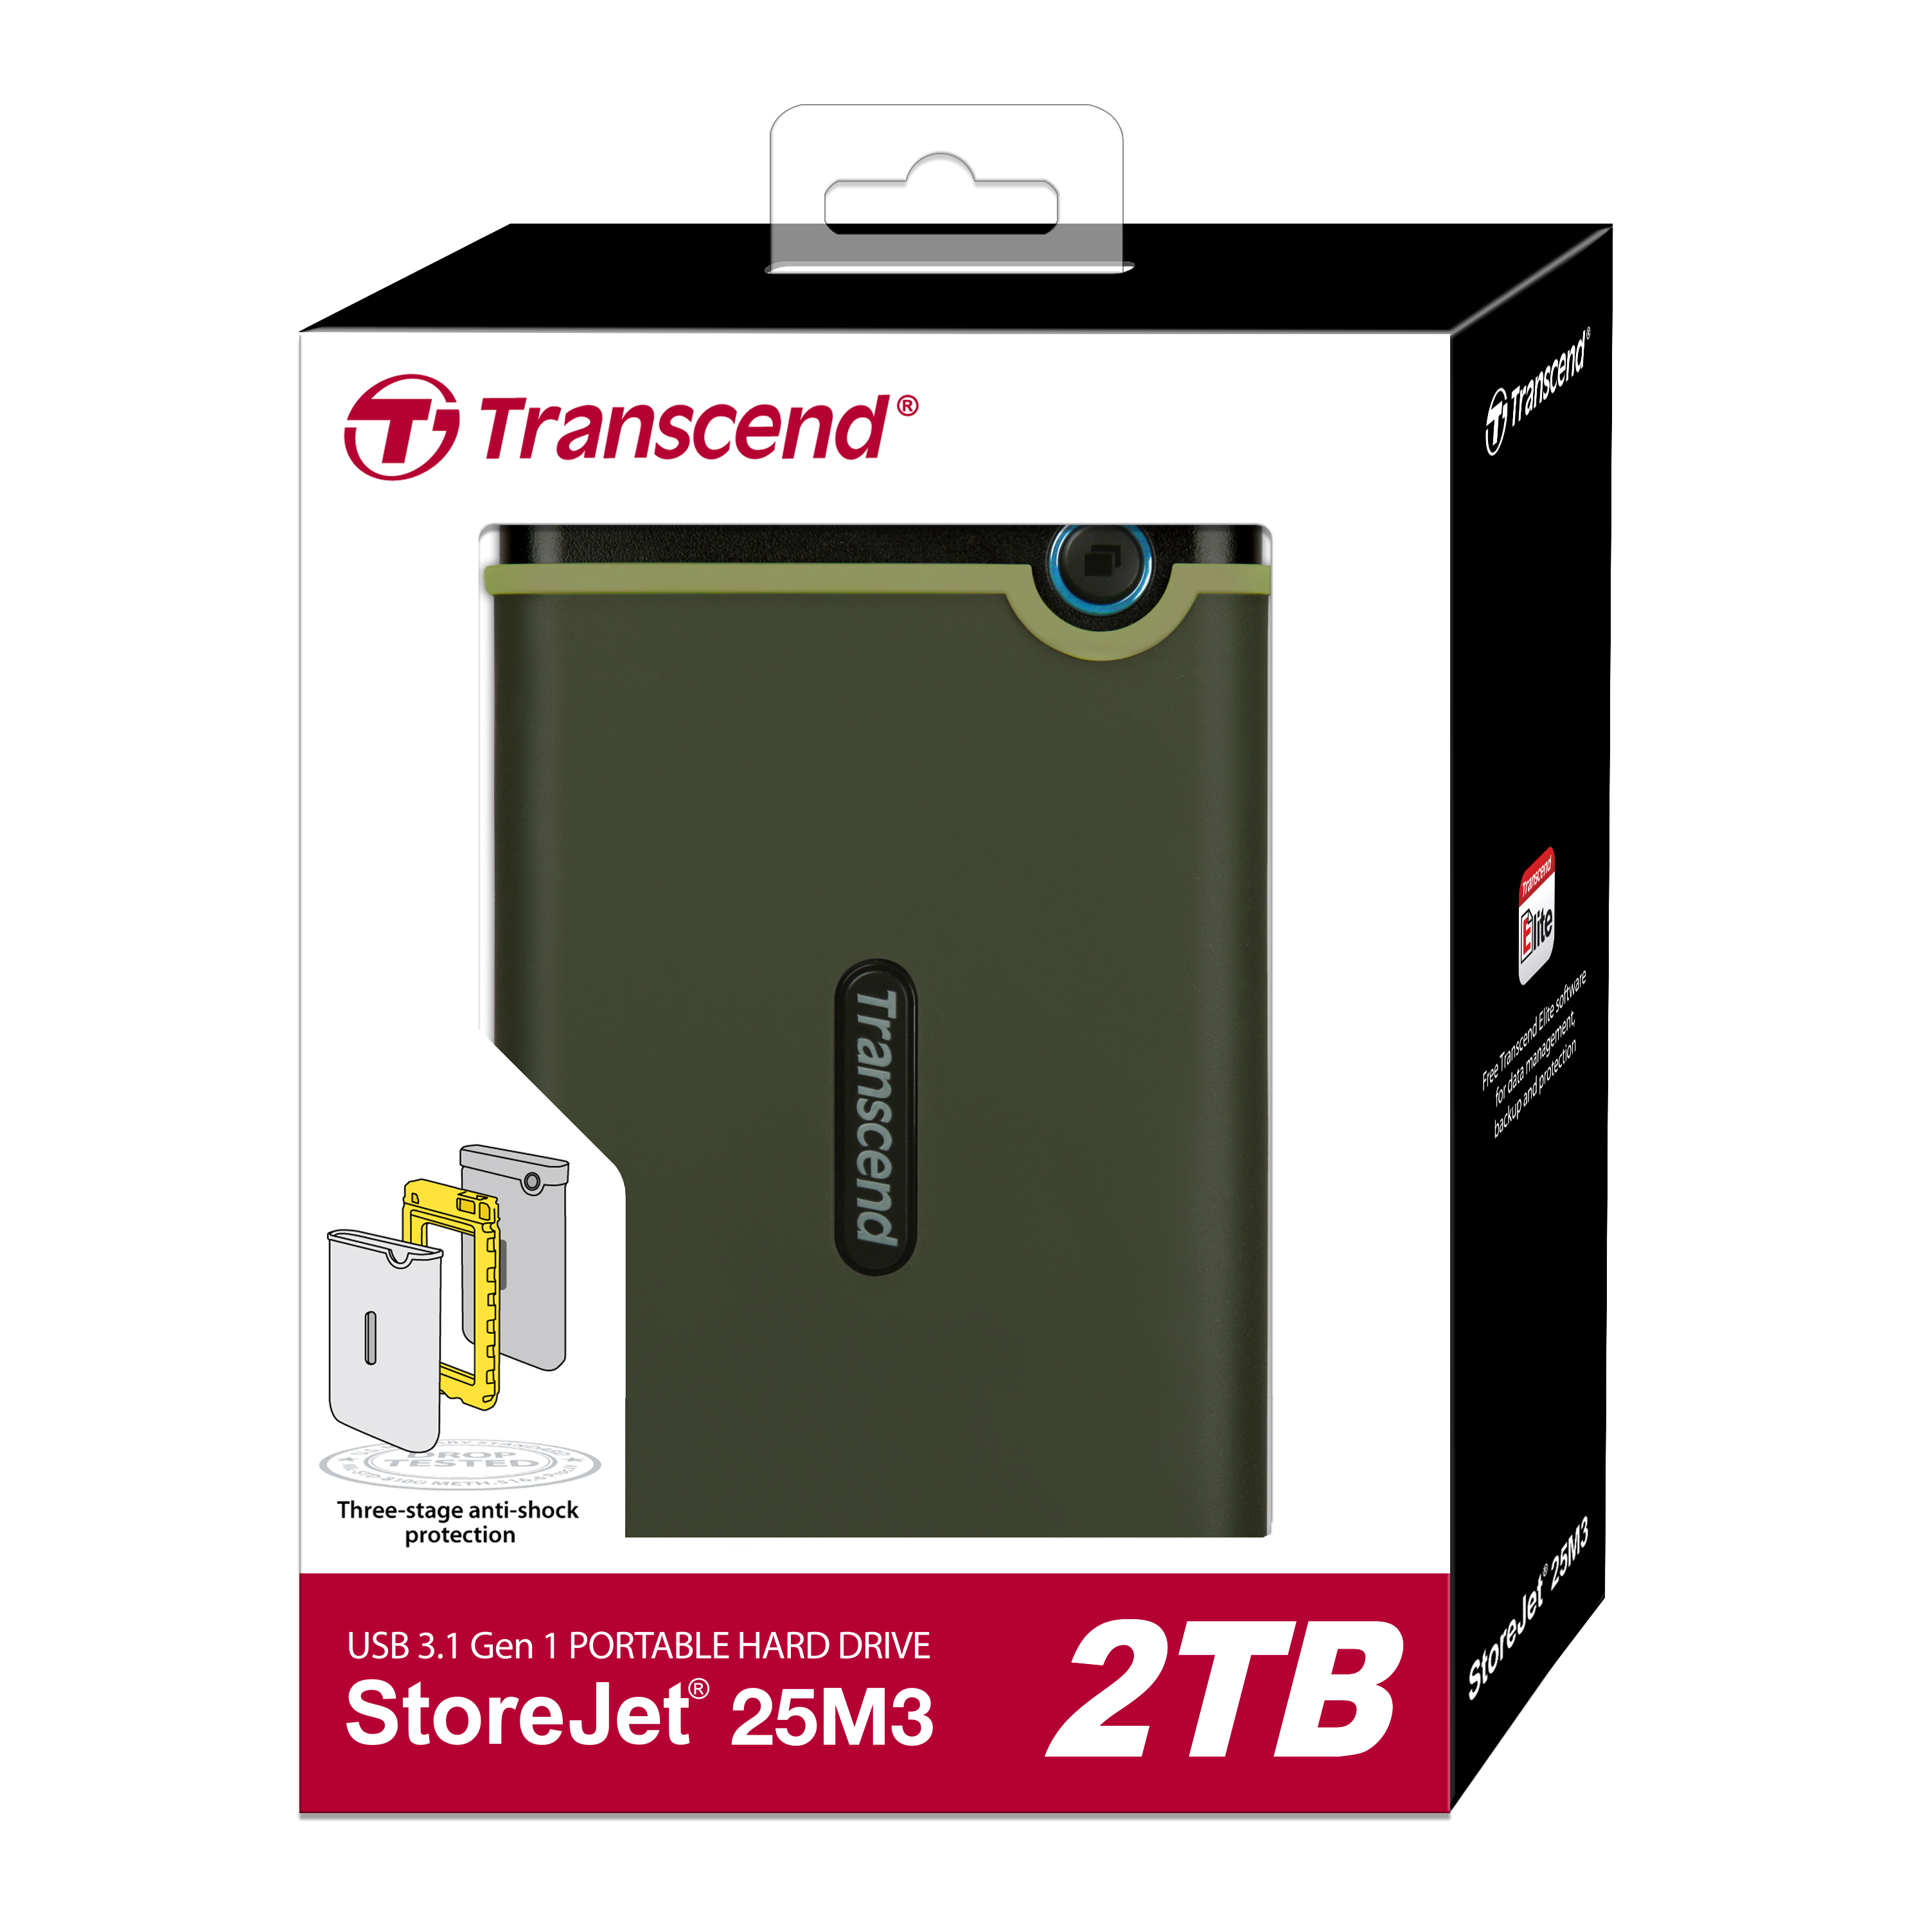 Transcend StoreJet 25M3